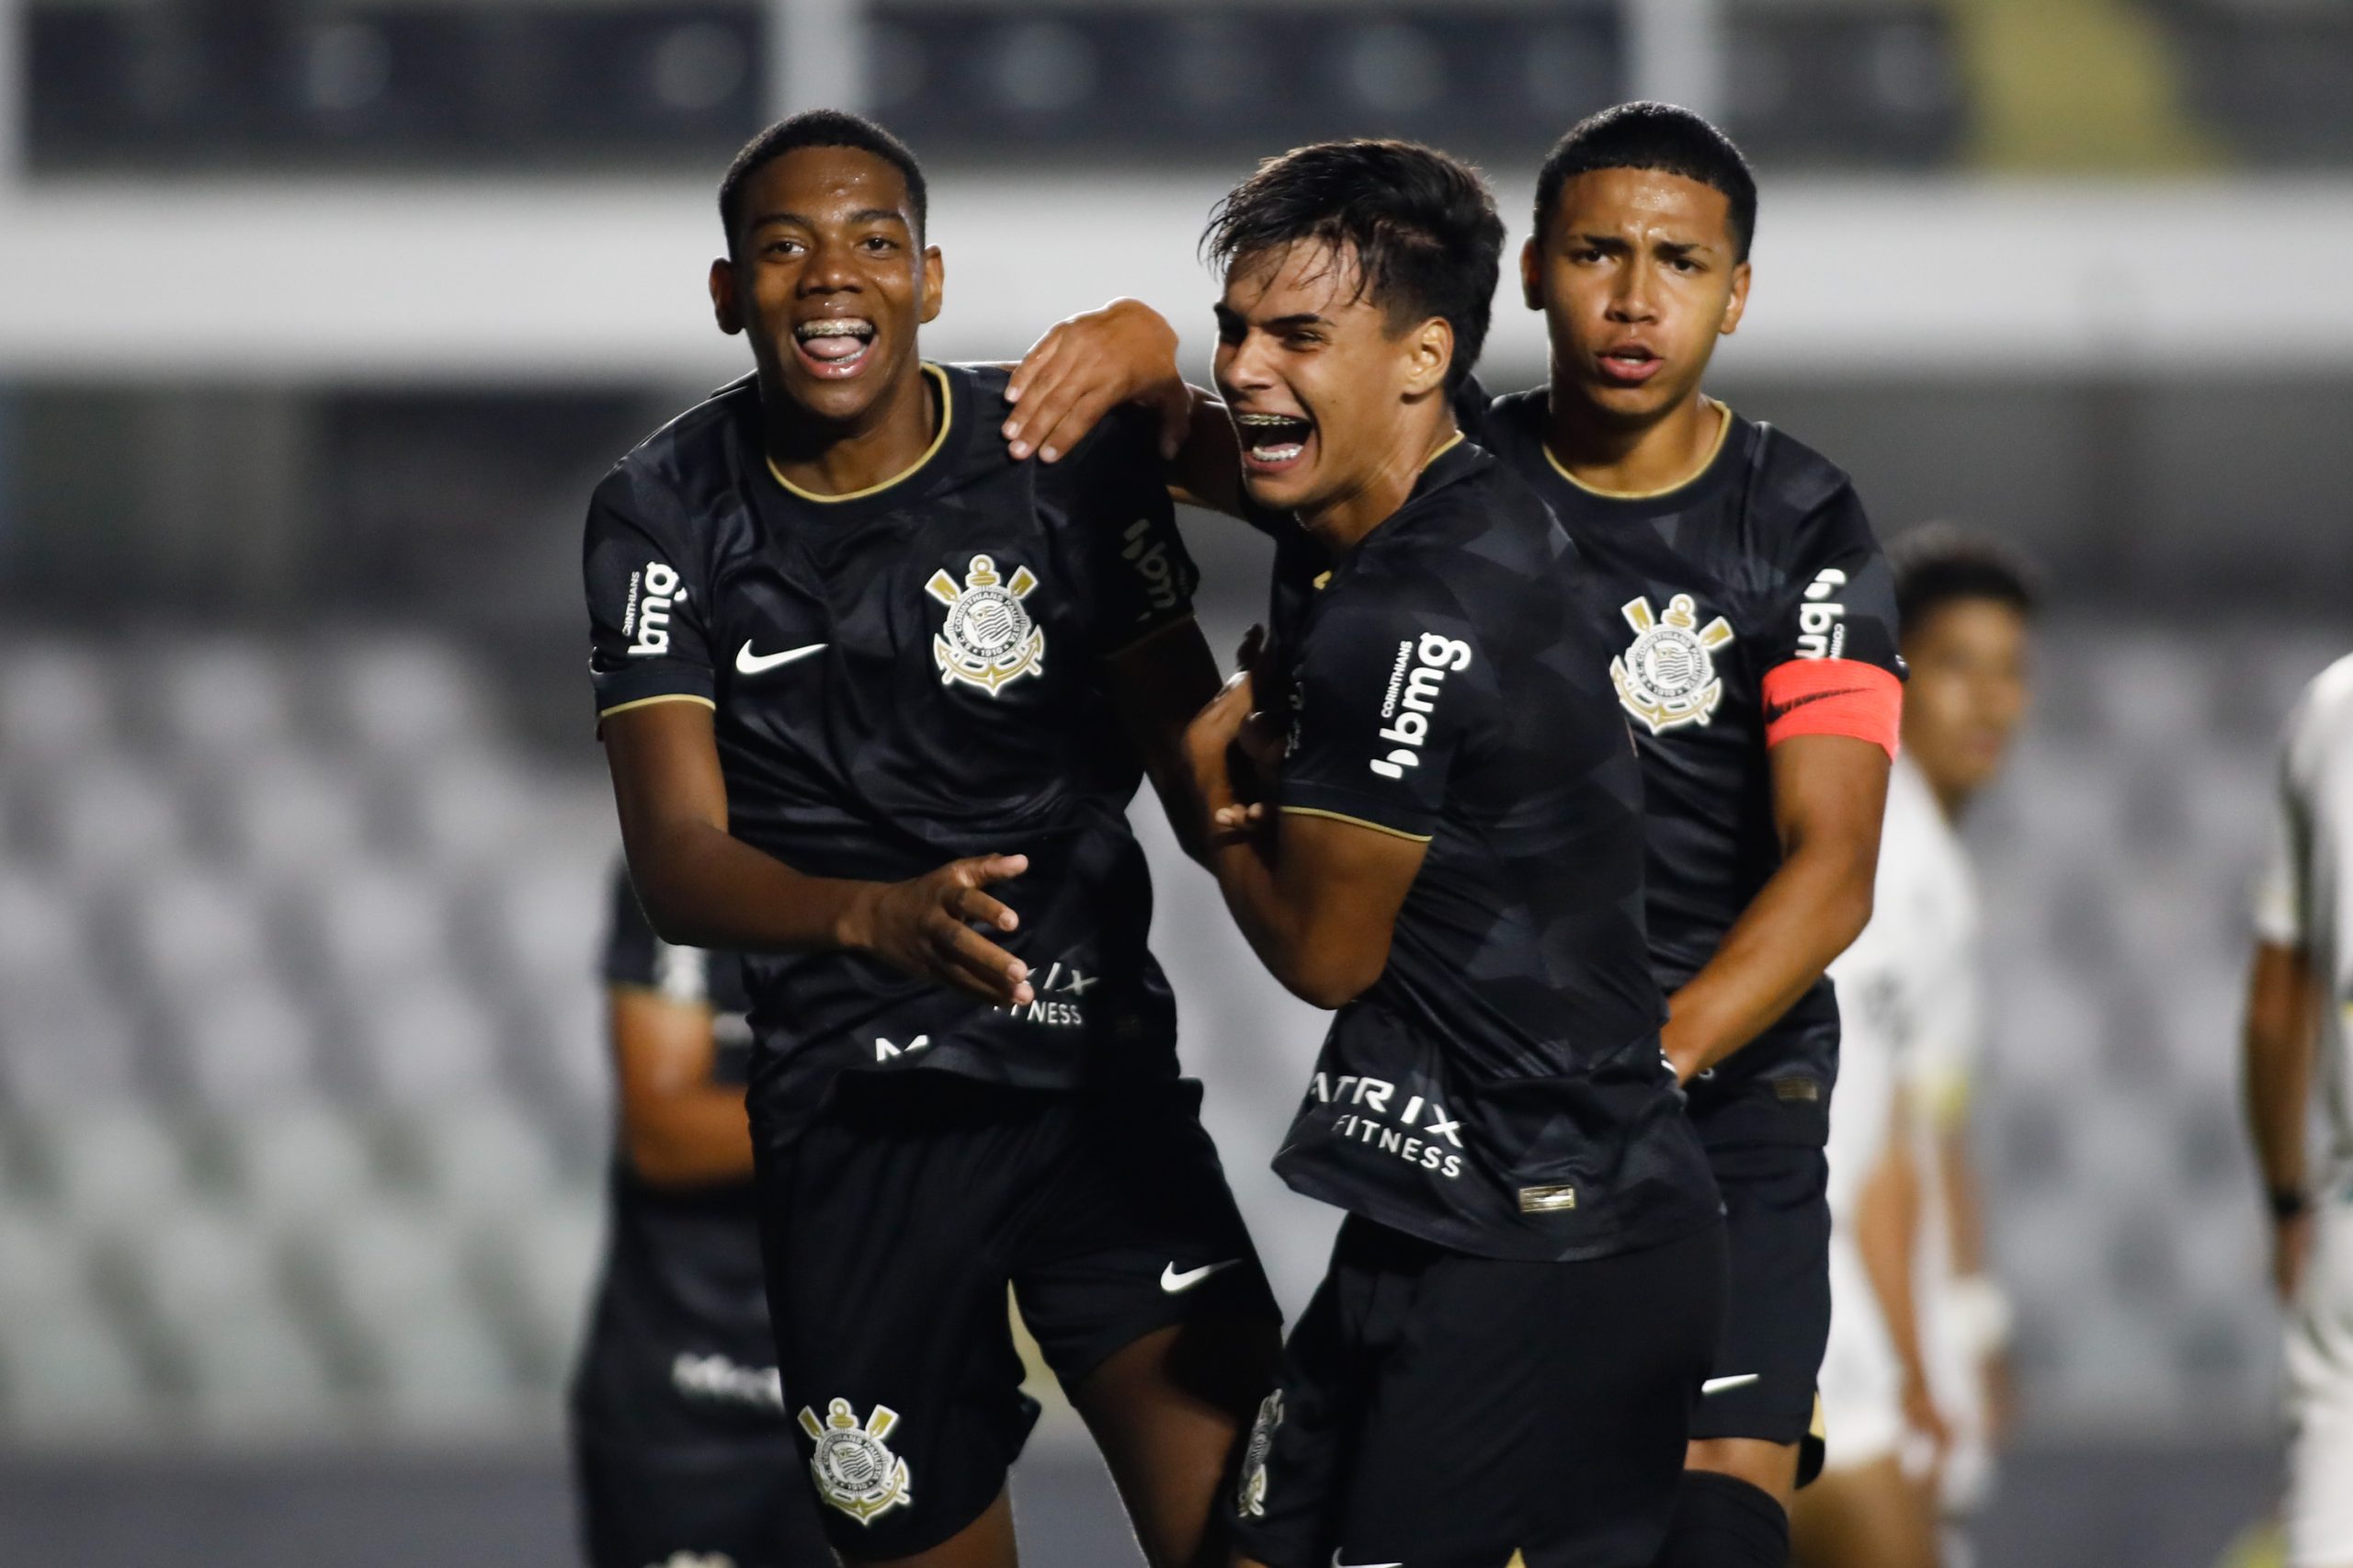 Corinthians encara o Santos no primeiro jogo da semifinal do